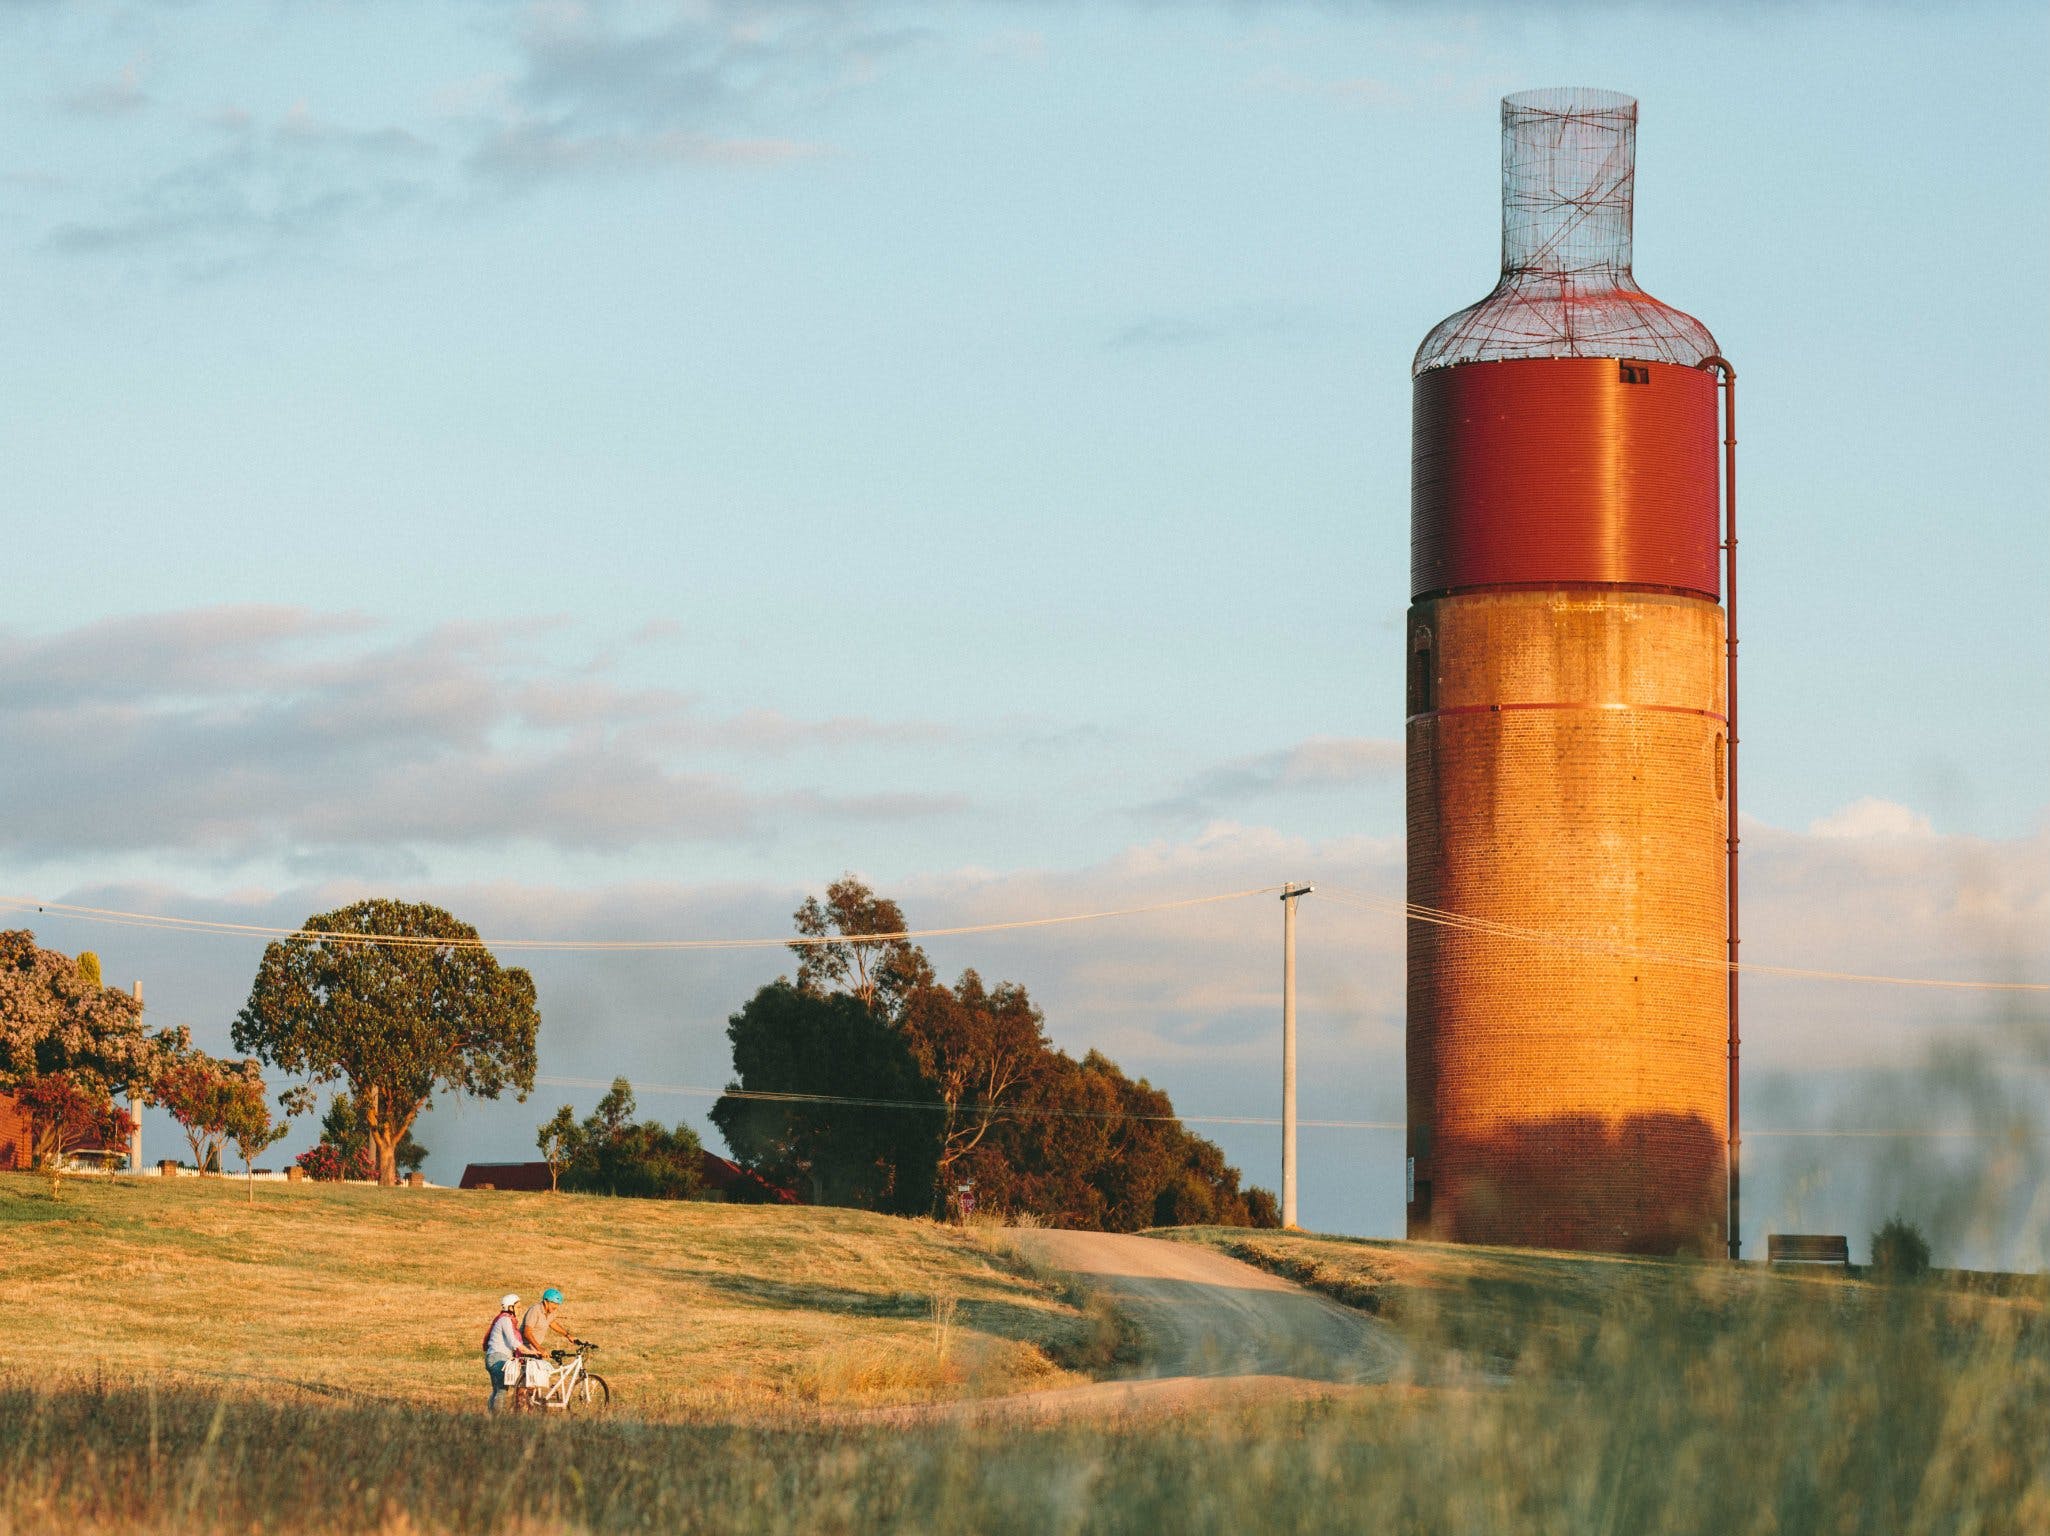 Rutherglen Wine Bottle - Wagga Wagga Accommodation